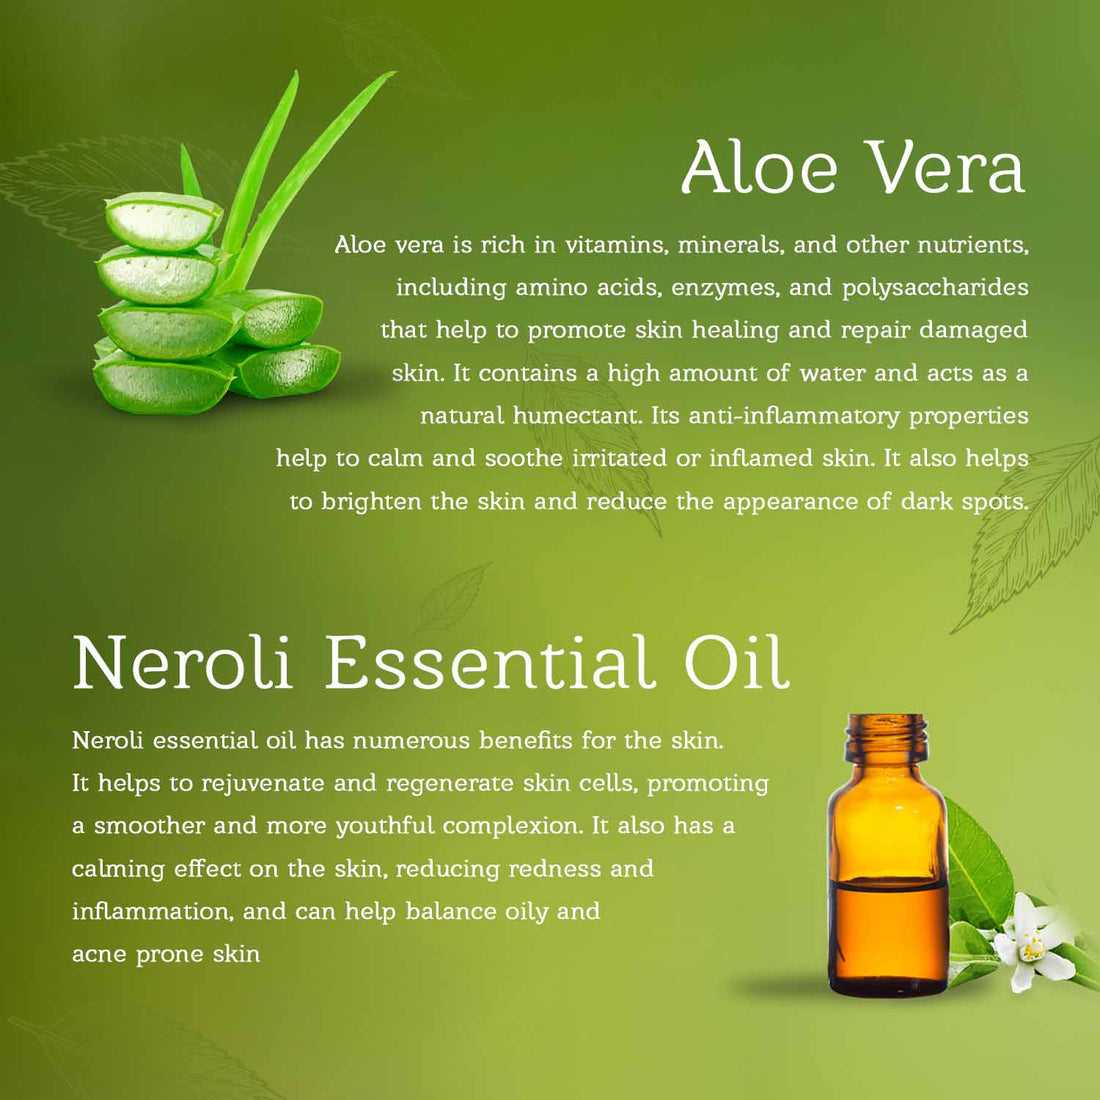 Aloe vera Soap For Acne and Dark Spots